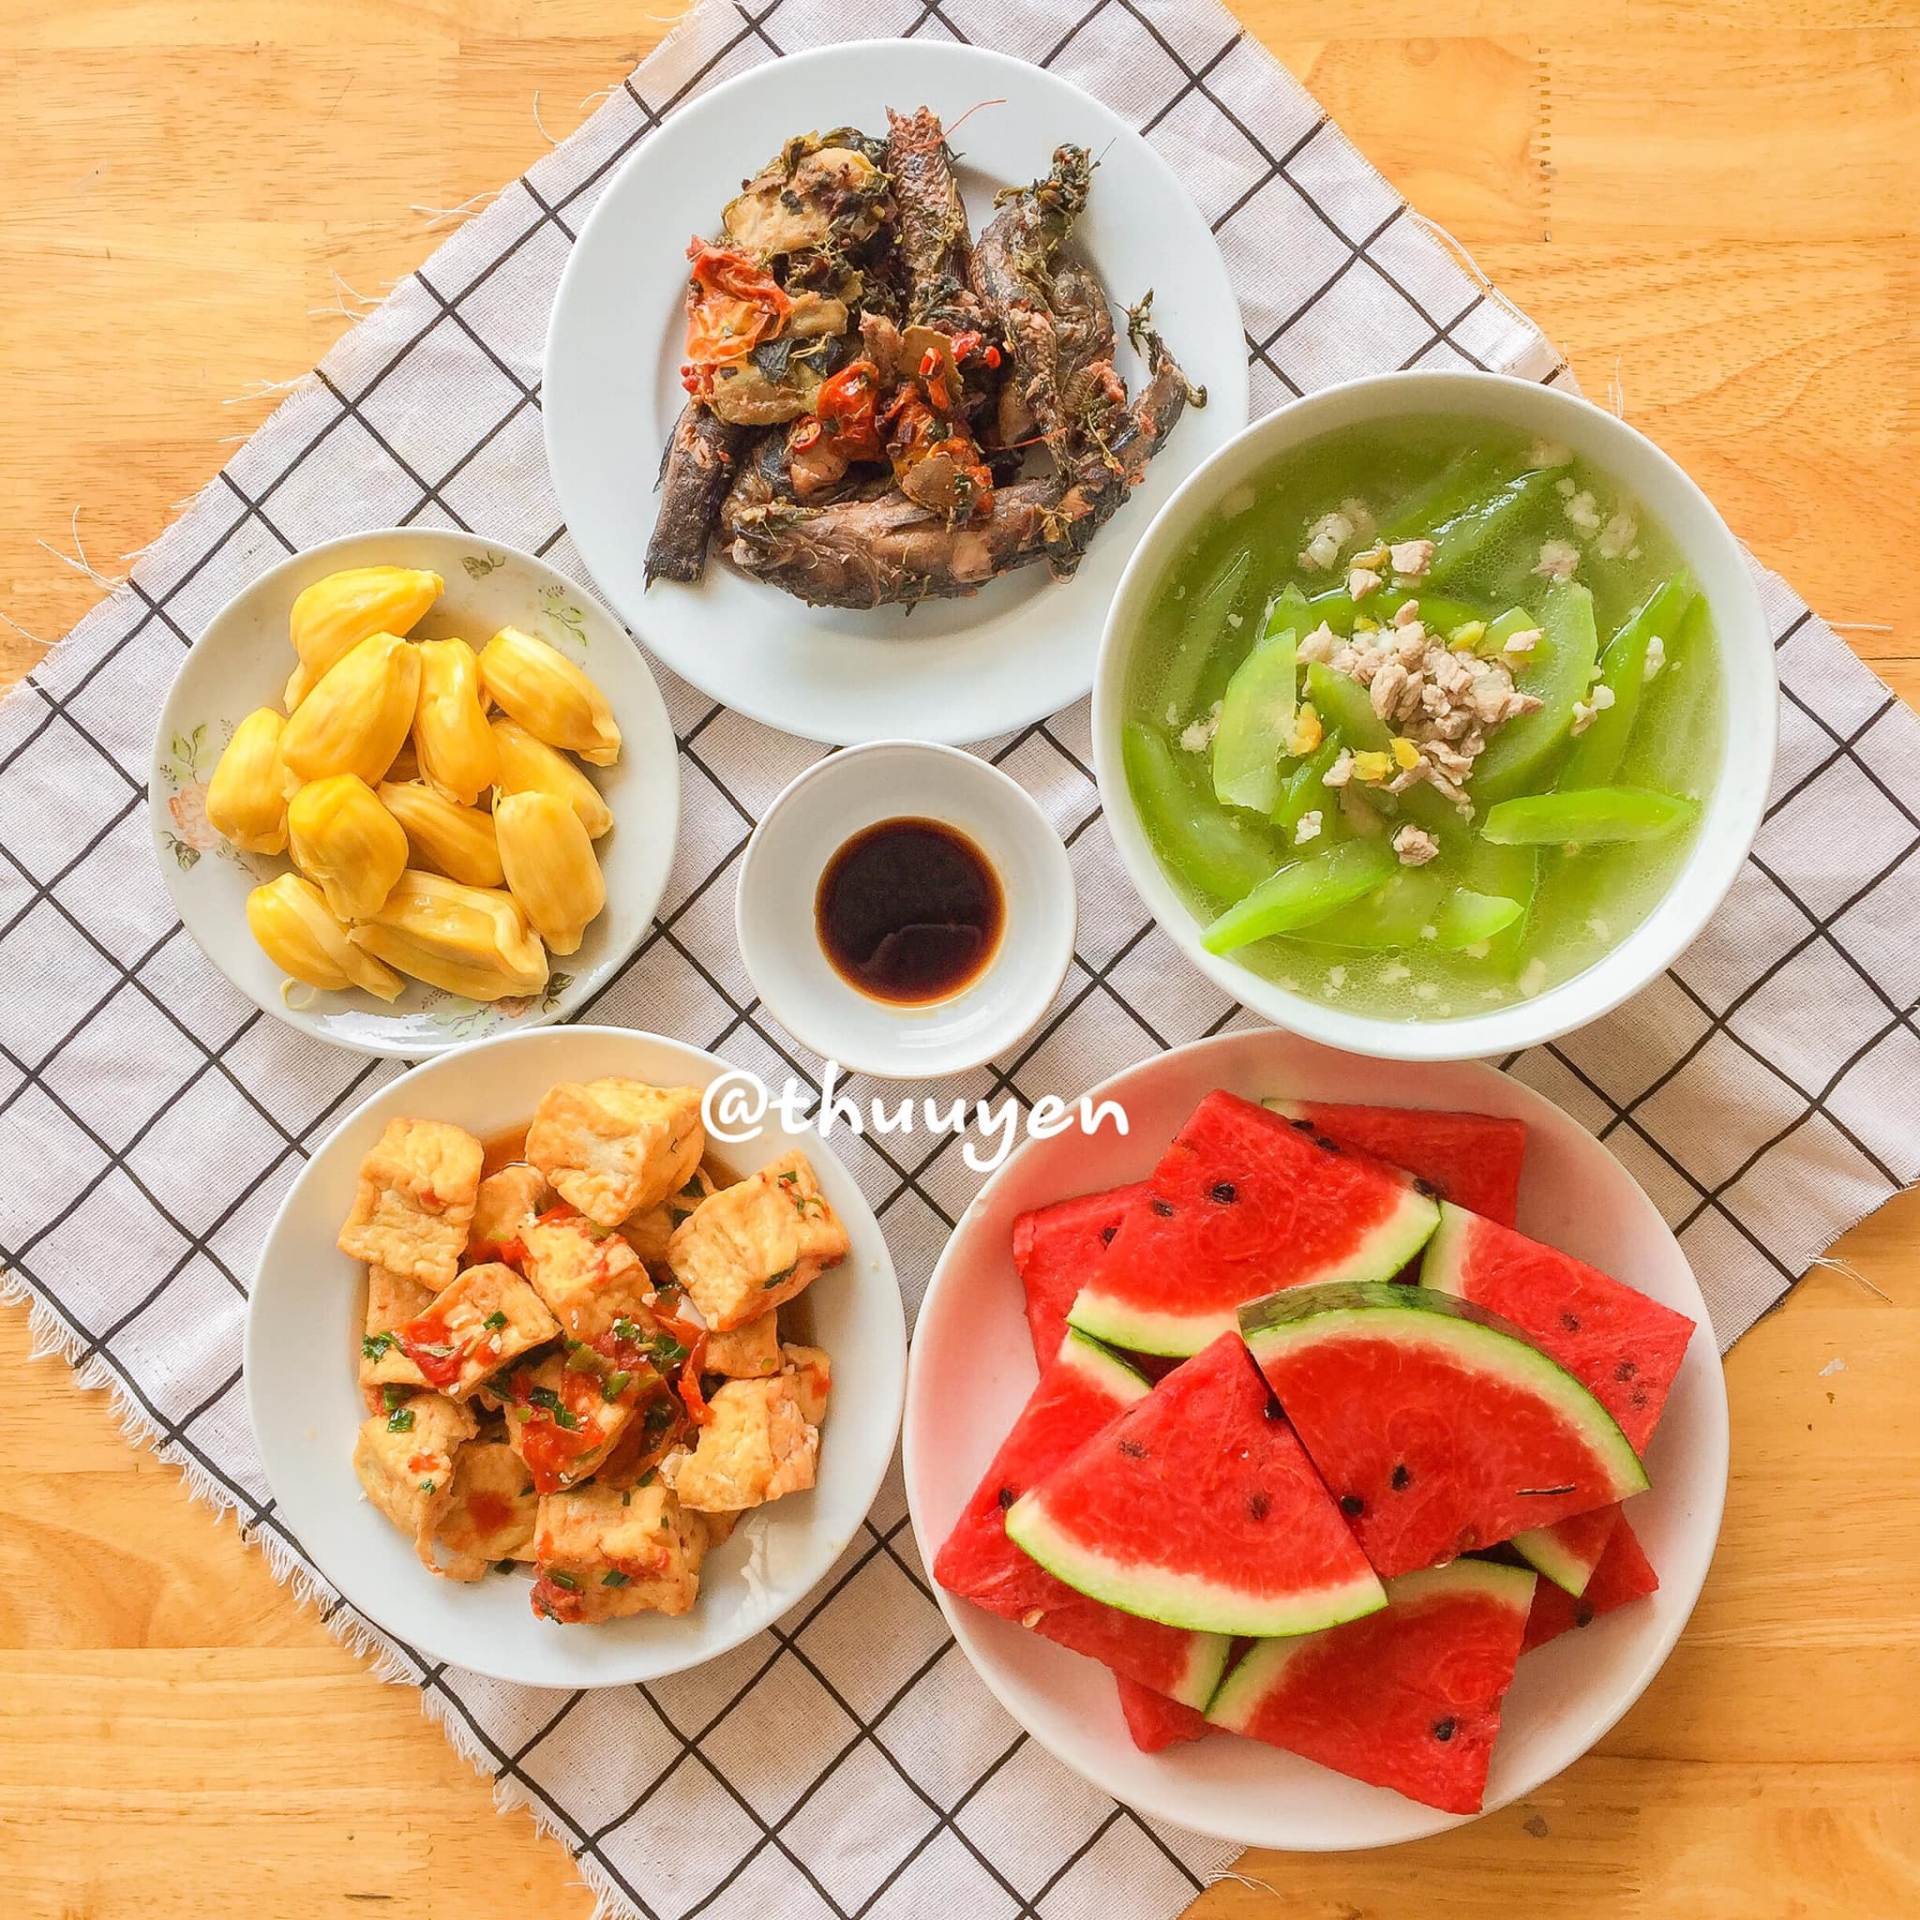 Thực đơn của mâm cơm này rất đơn giản với nhiều món dễ nấu: Cá bống kho - Đậu sốt cà chua - Canh bí nấu thịt bằm - Tráng miệng: Dưa hấu và mít